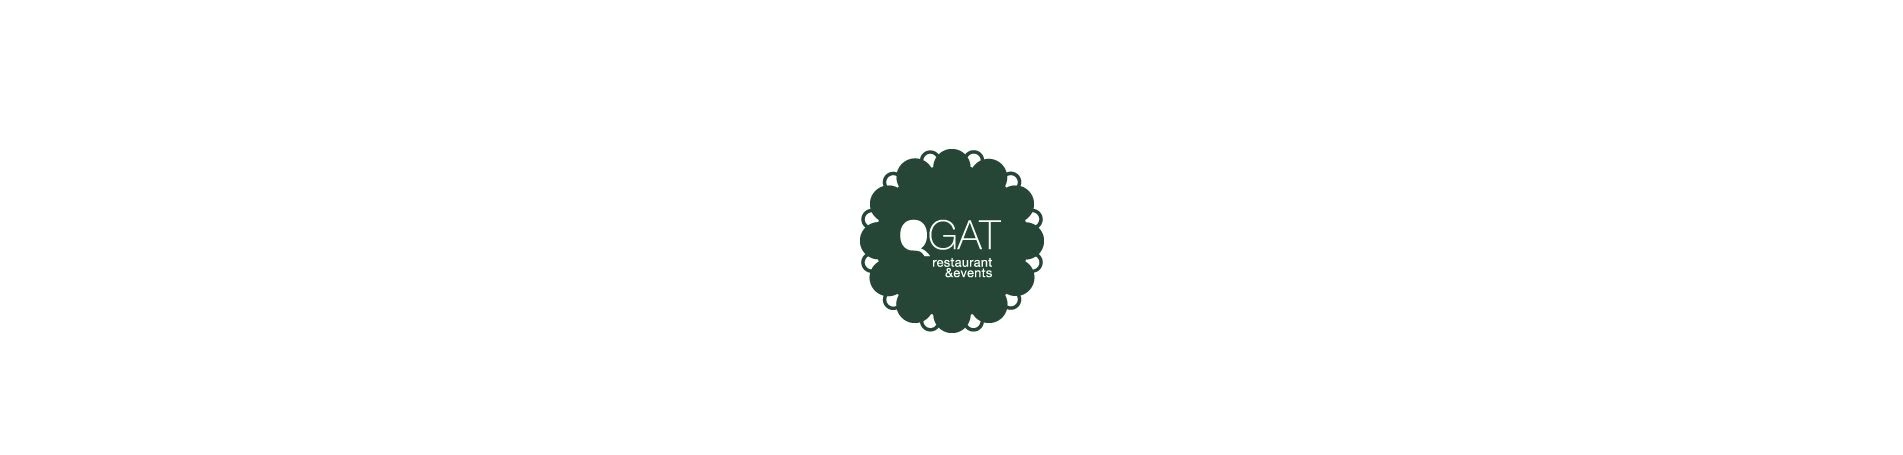 Qgat, nuevo cliente de Online Marketing Outsourcing